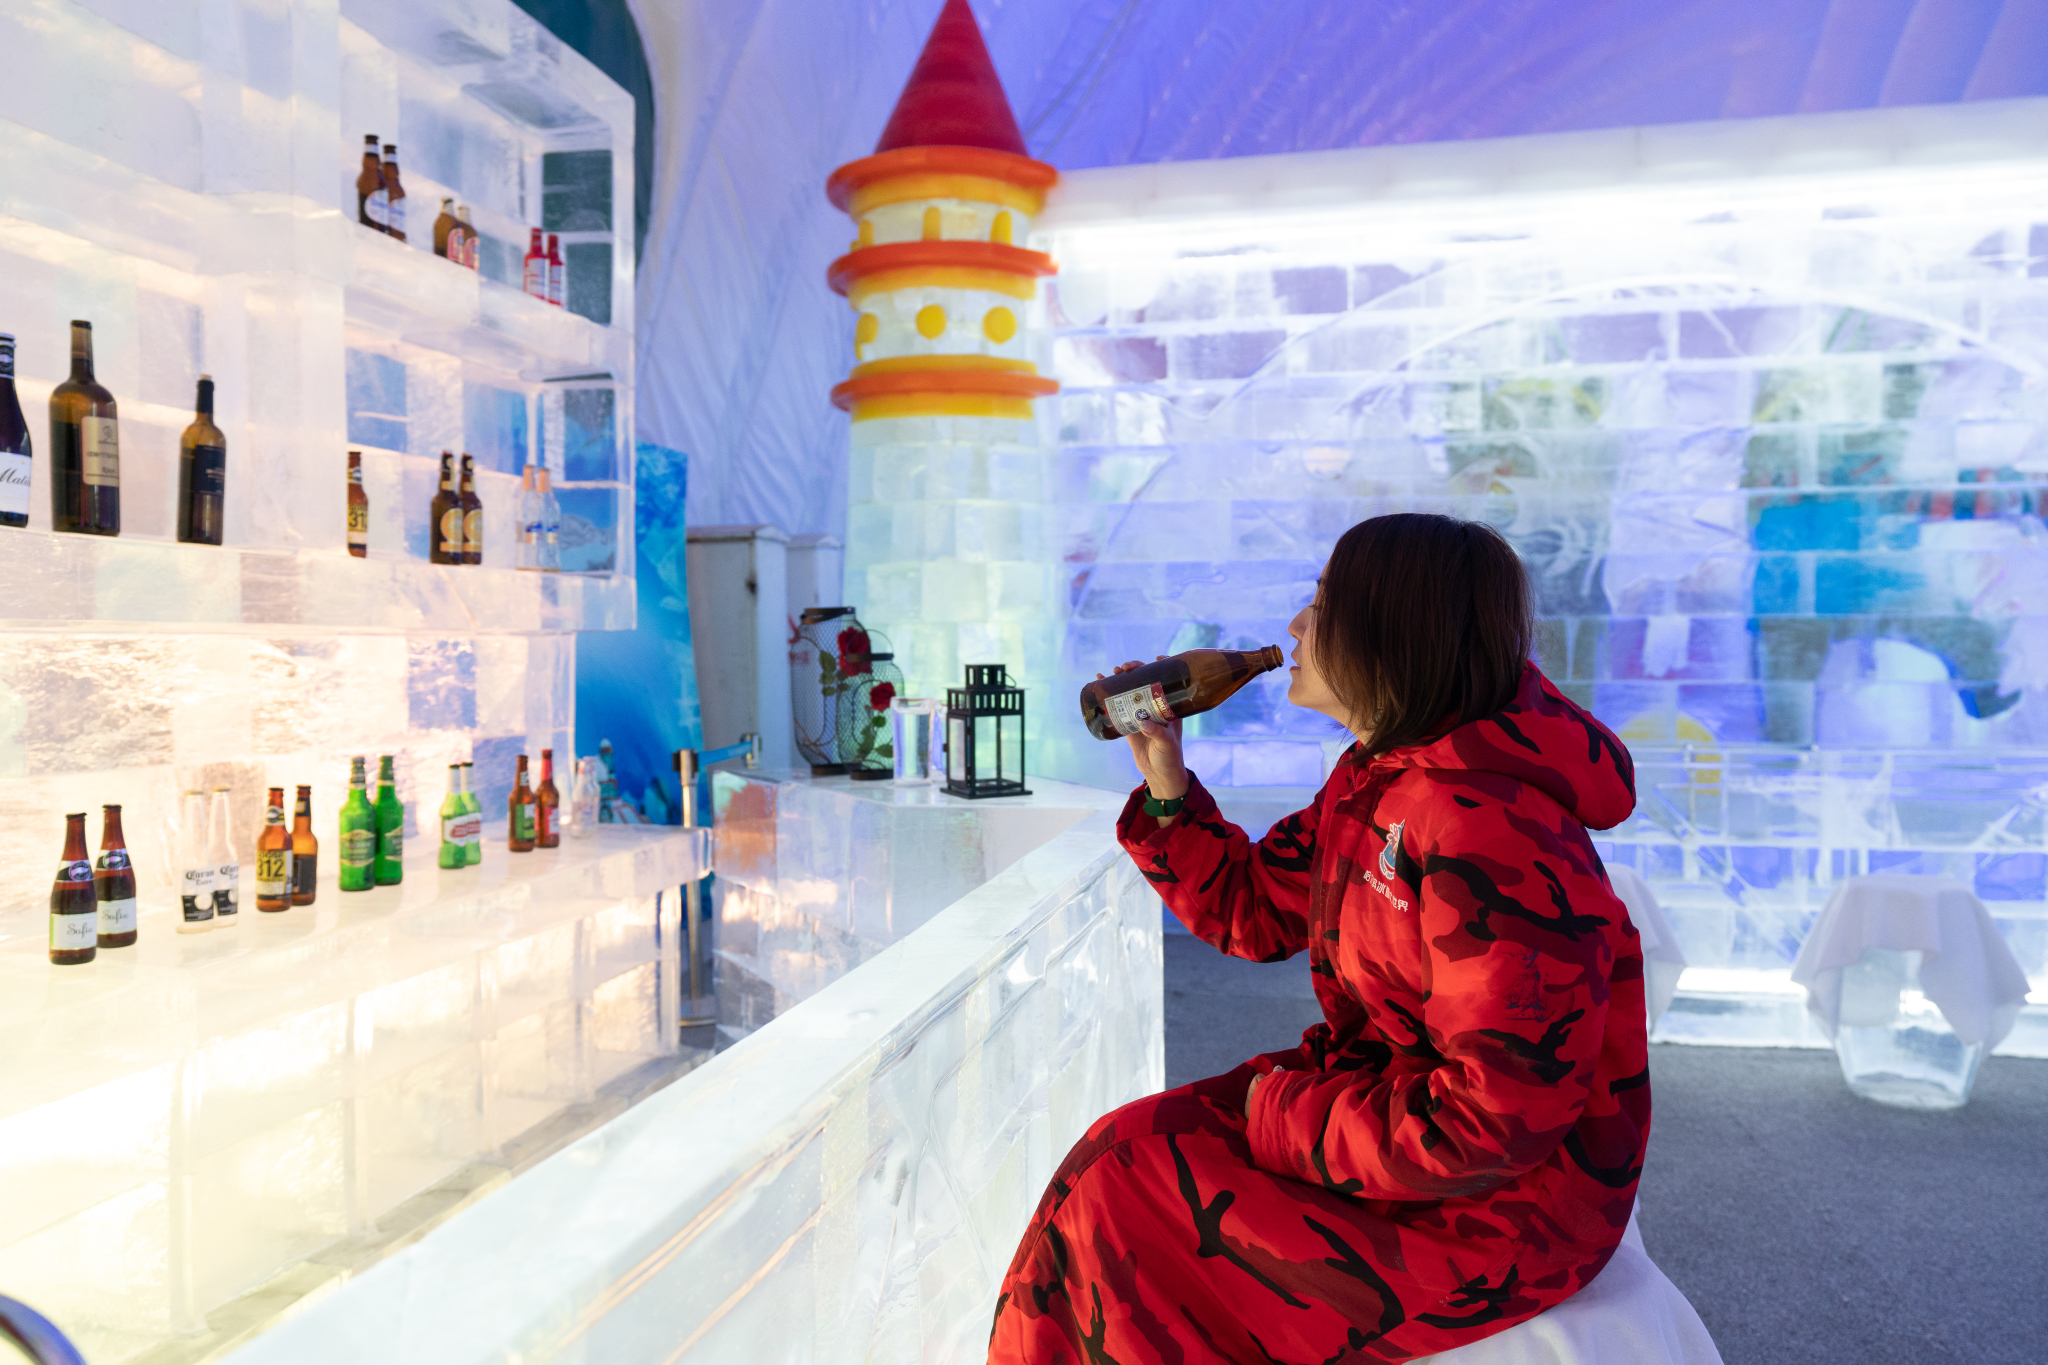 还特别设置了有趣的主题冰馆:海底世界,冰冻花卉,童话世界,冰雪艺术